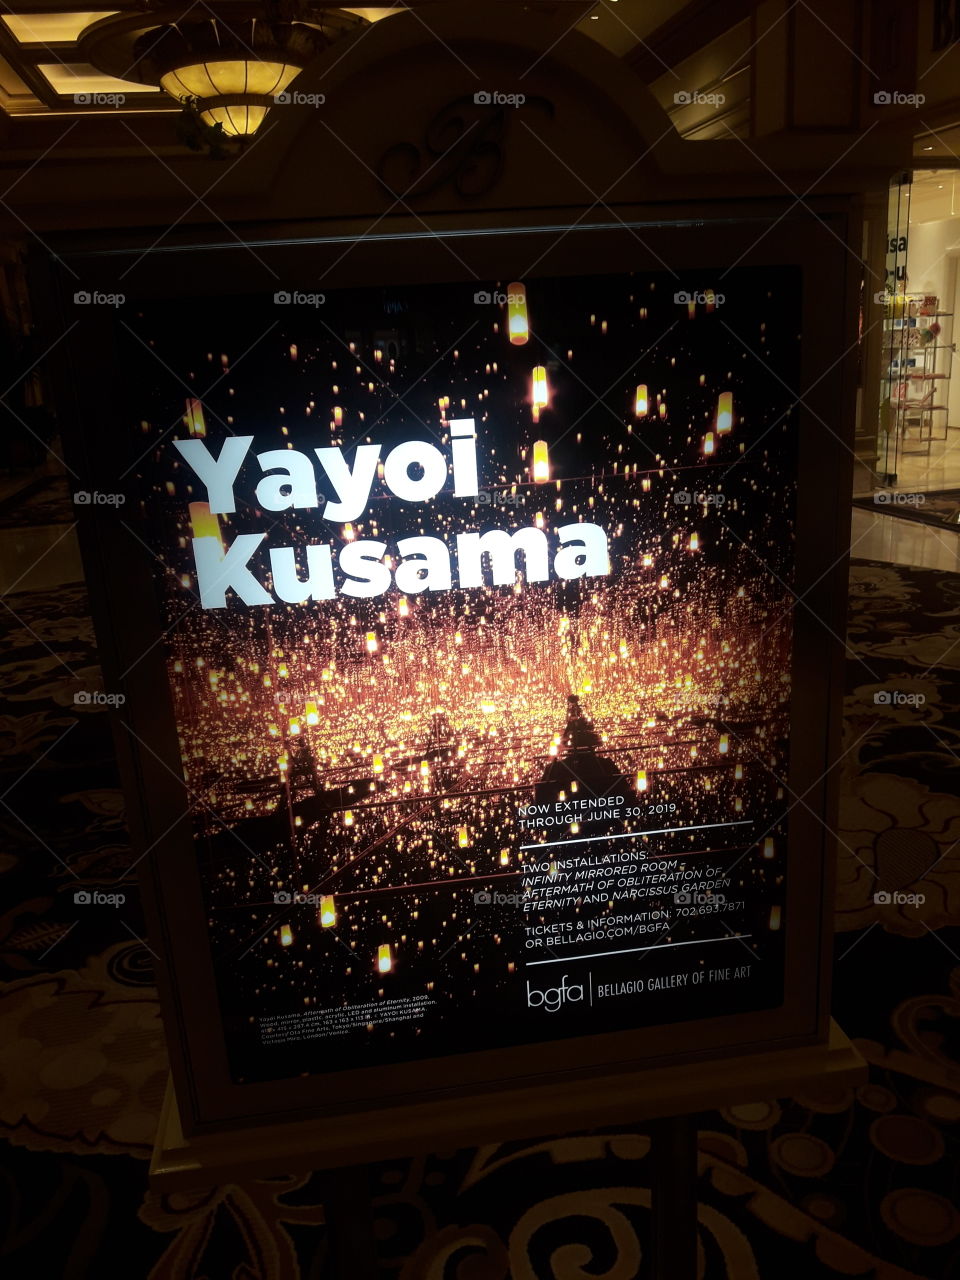 Yayoi Kusama Exhibit at Bellagio